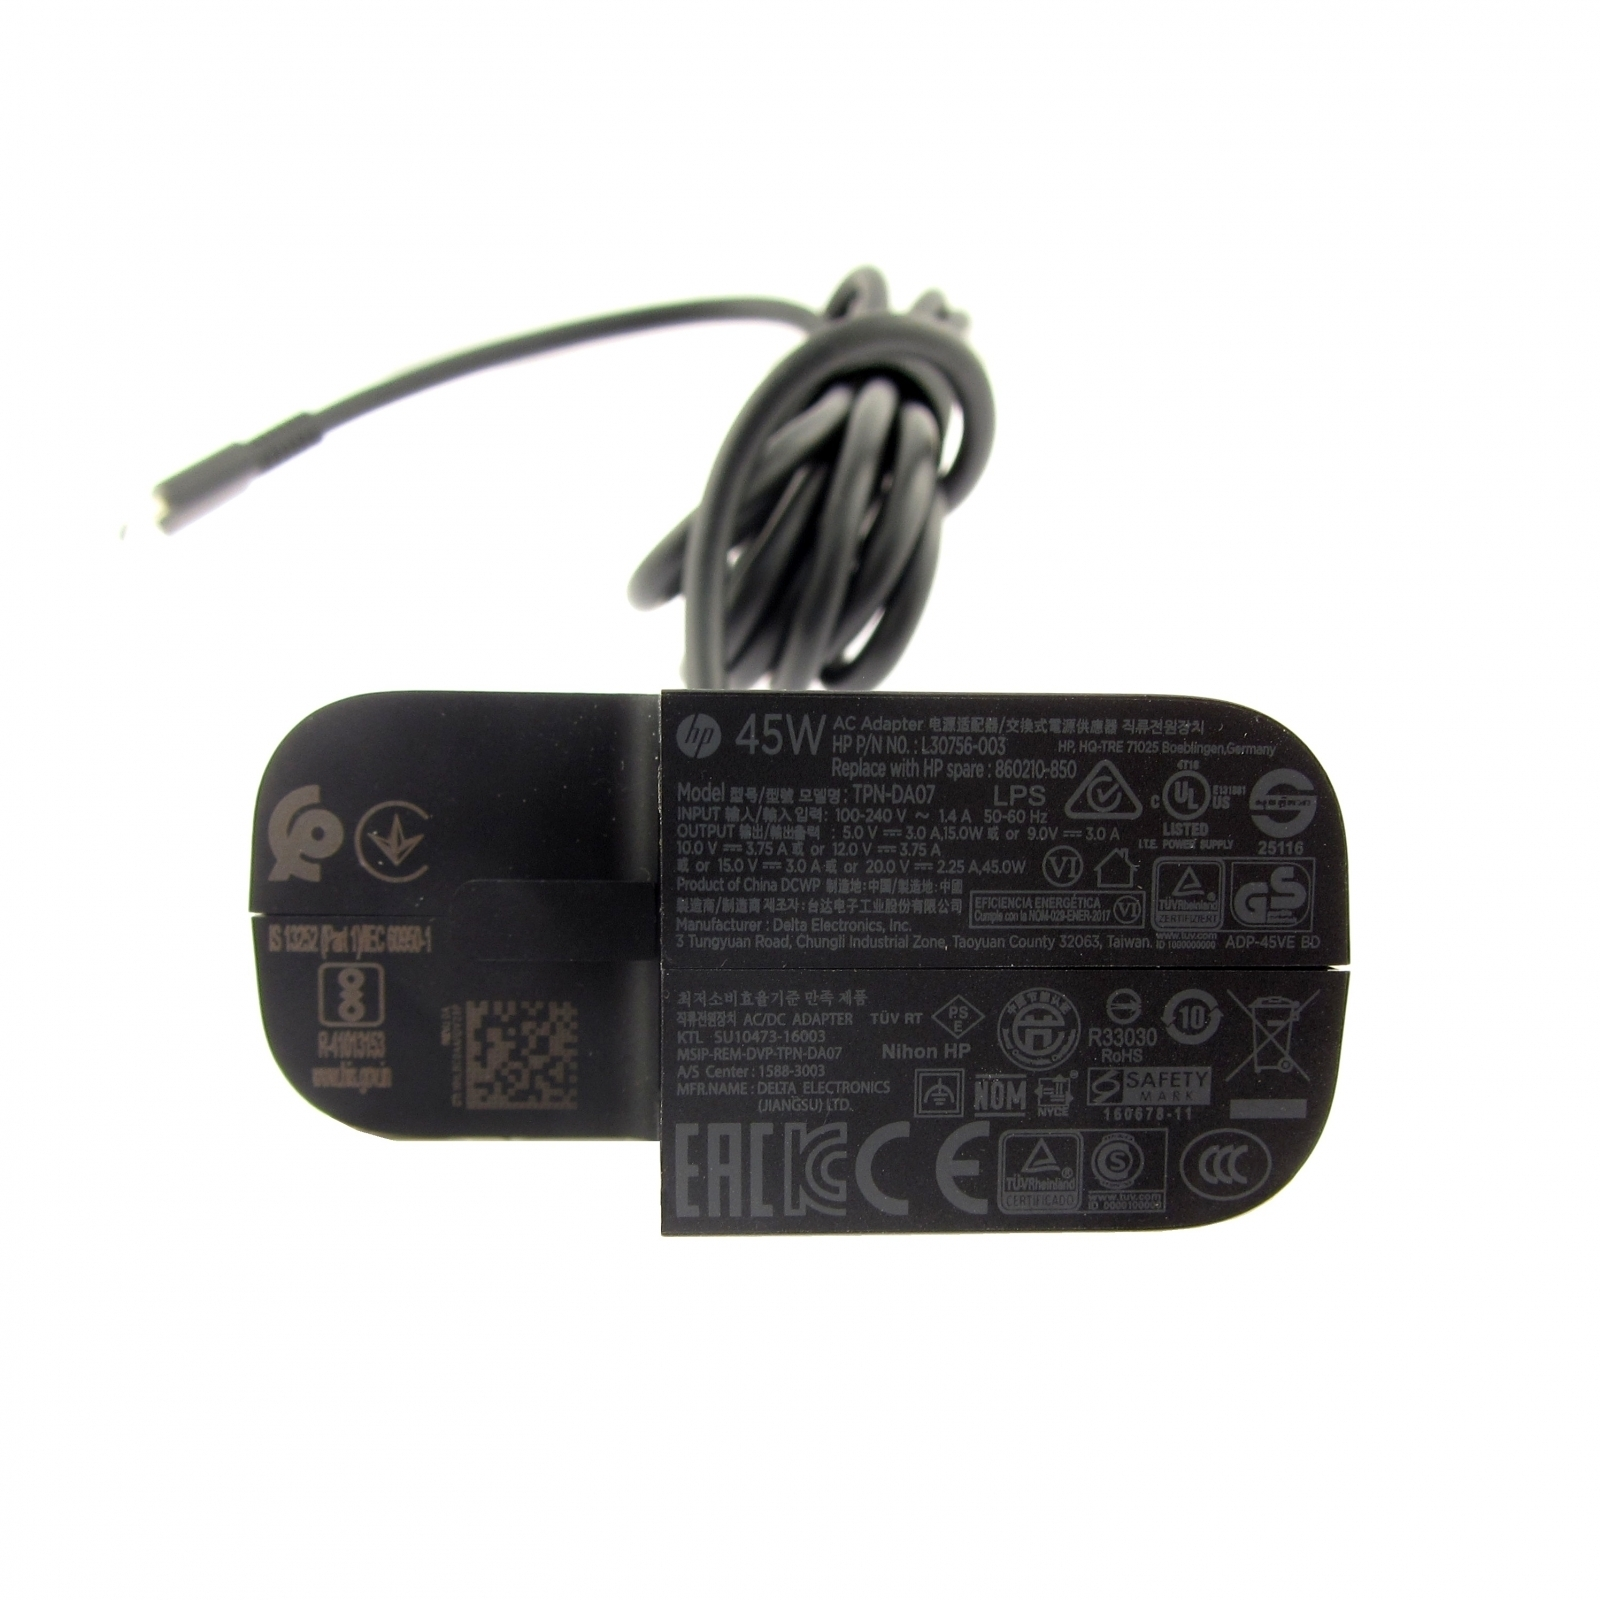 USB-C Netzteil Watt HP L30756-001 45 Original